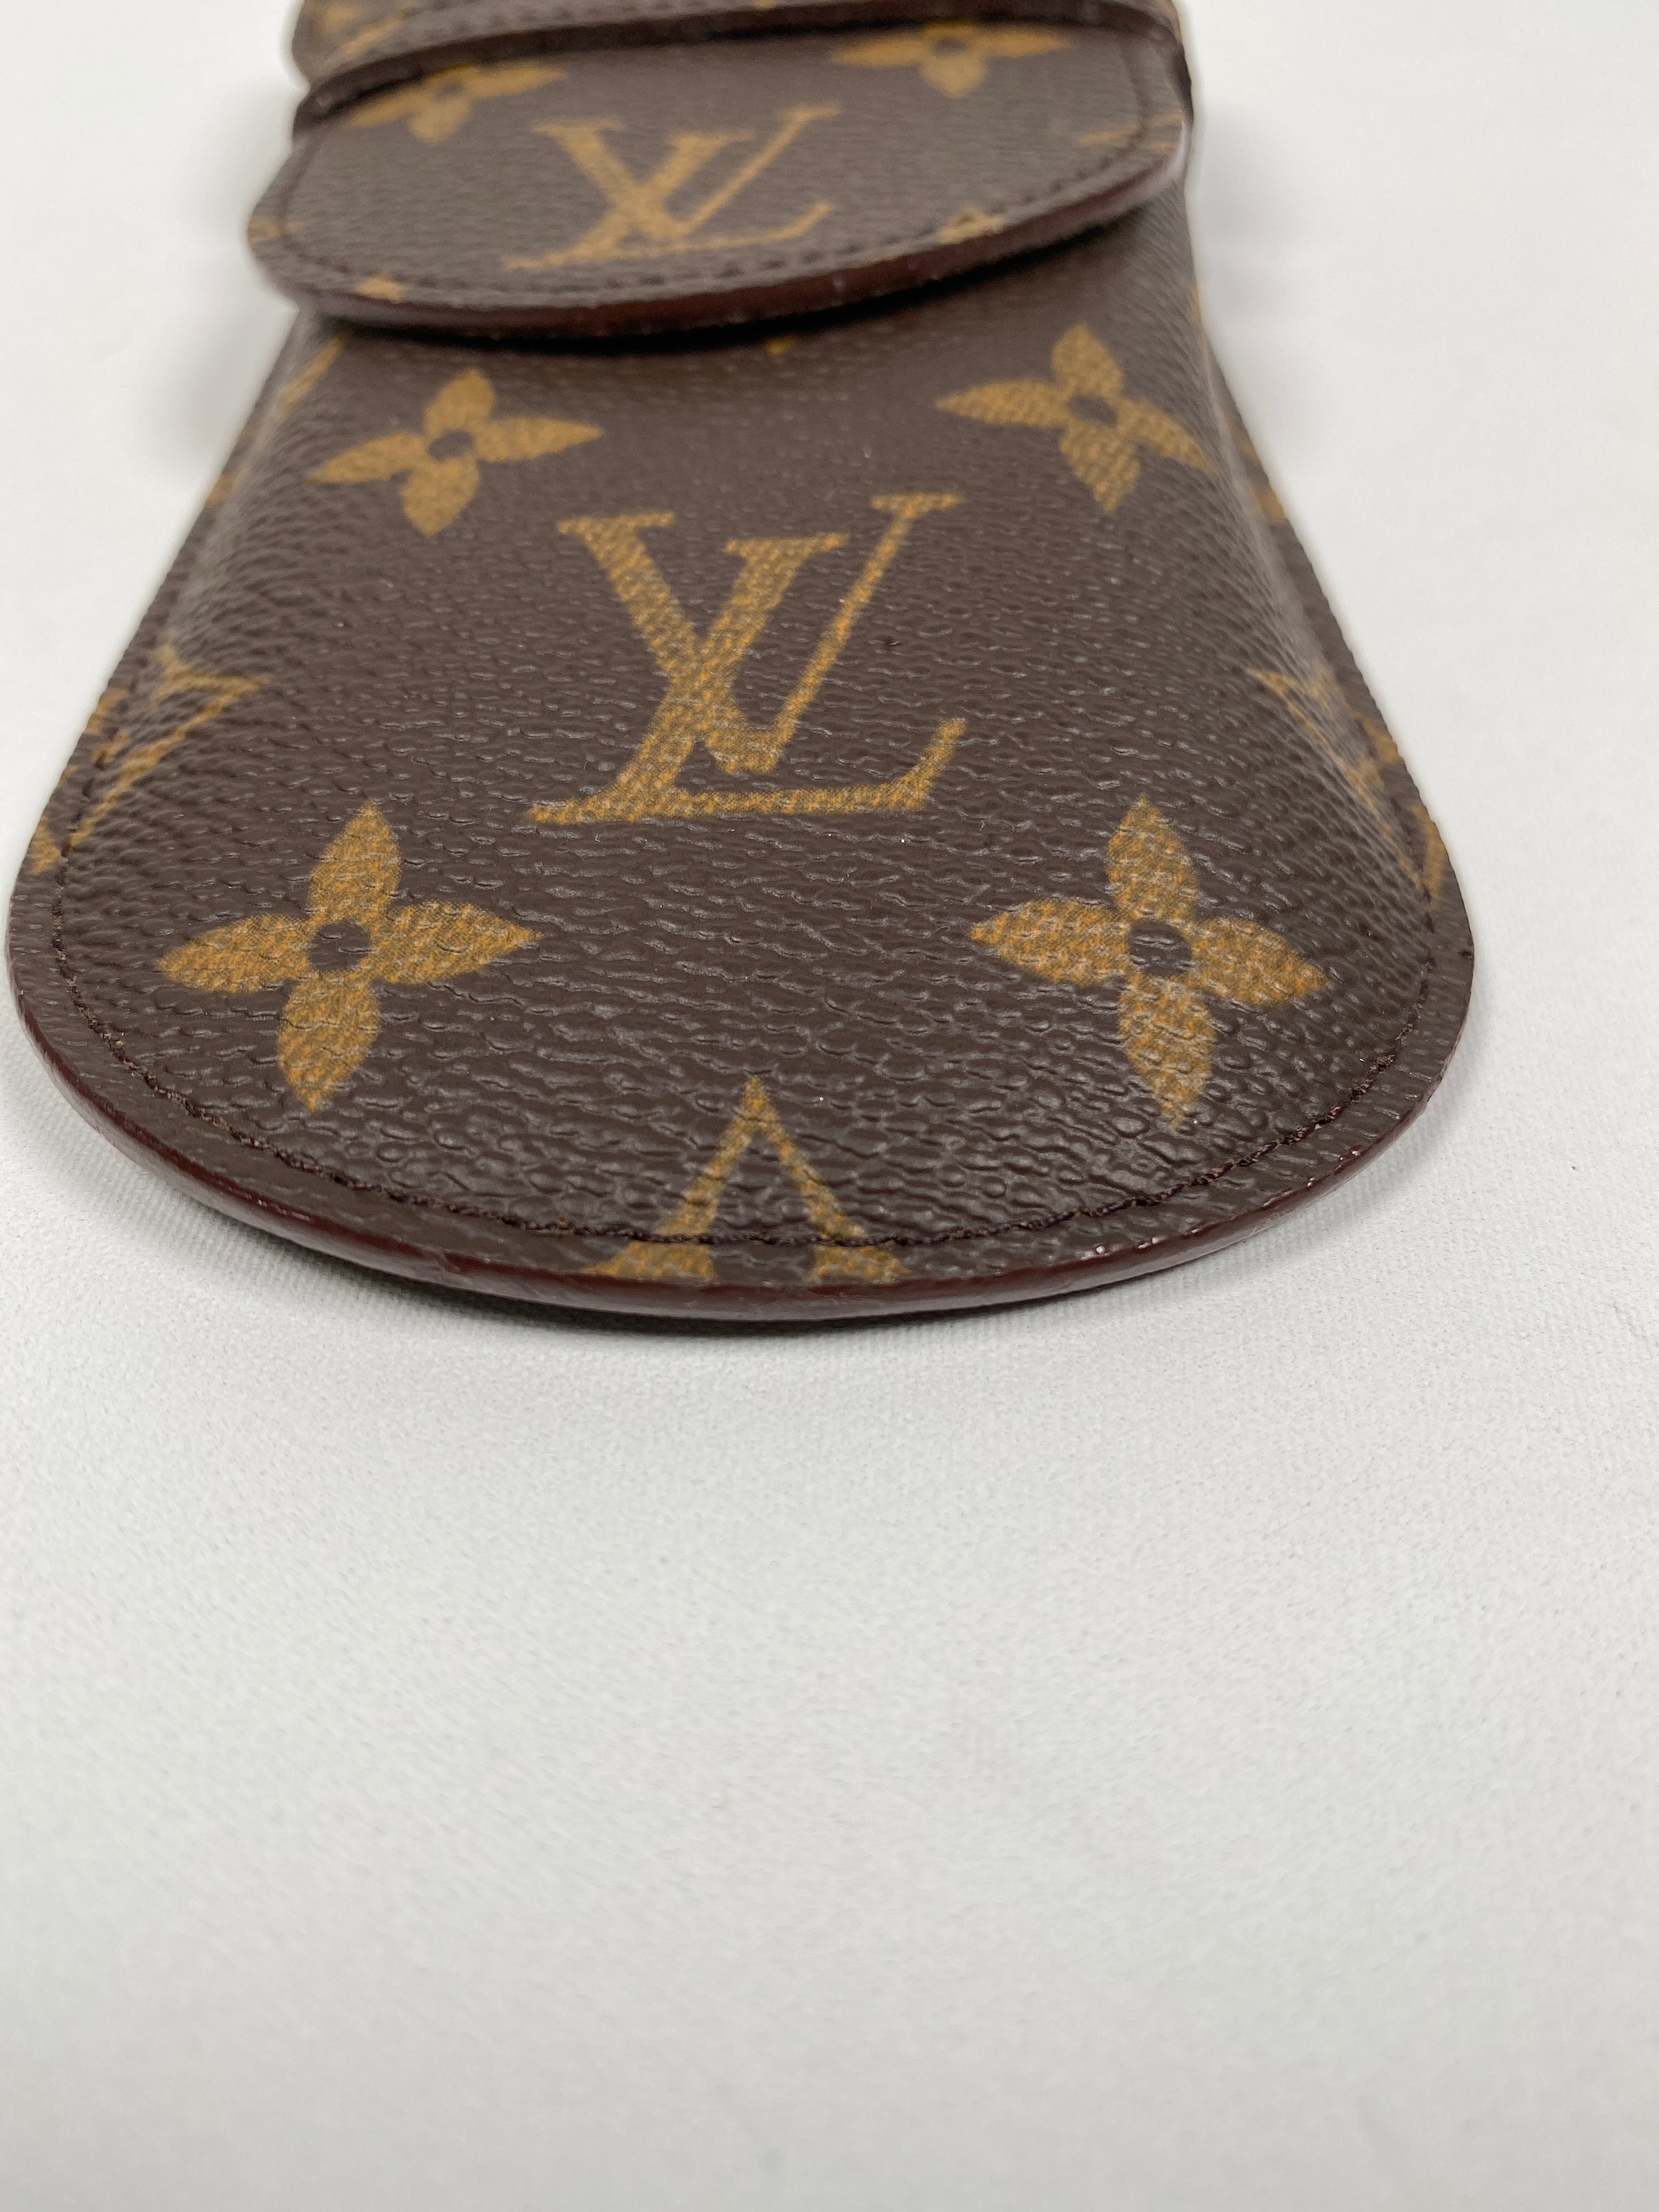 Louis Vuitton Monogram Etui a Lunettes Rabat Glasses Case – The